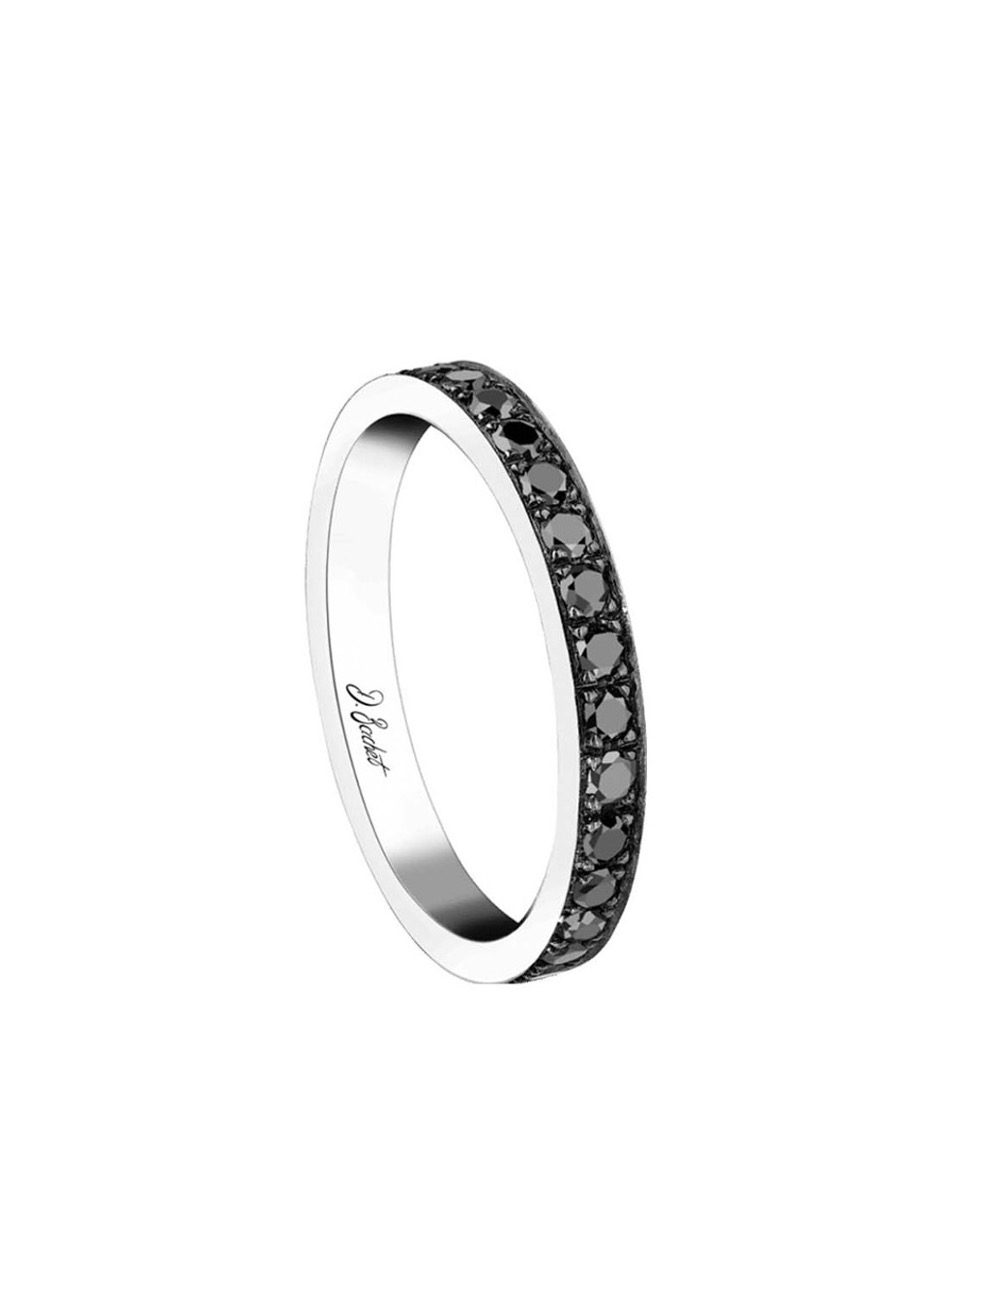 Alliance unisexe en platine, sertie de diamants noirs étincelants autour de l'anneau, capturant la lumière de manière raffinée.